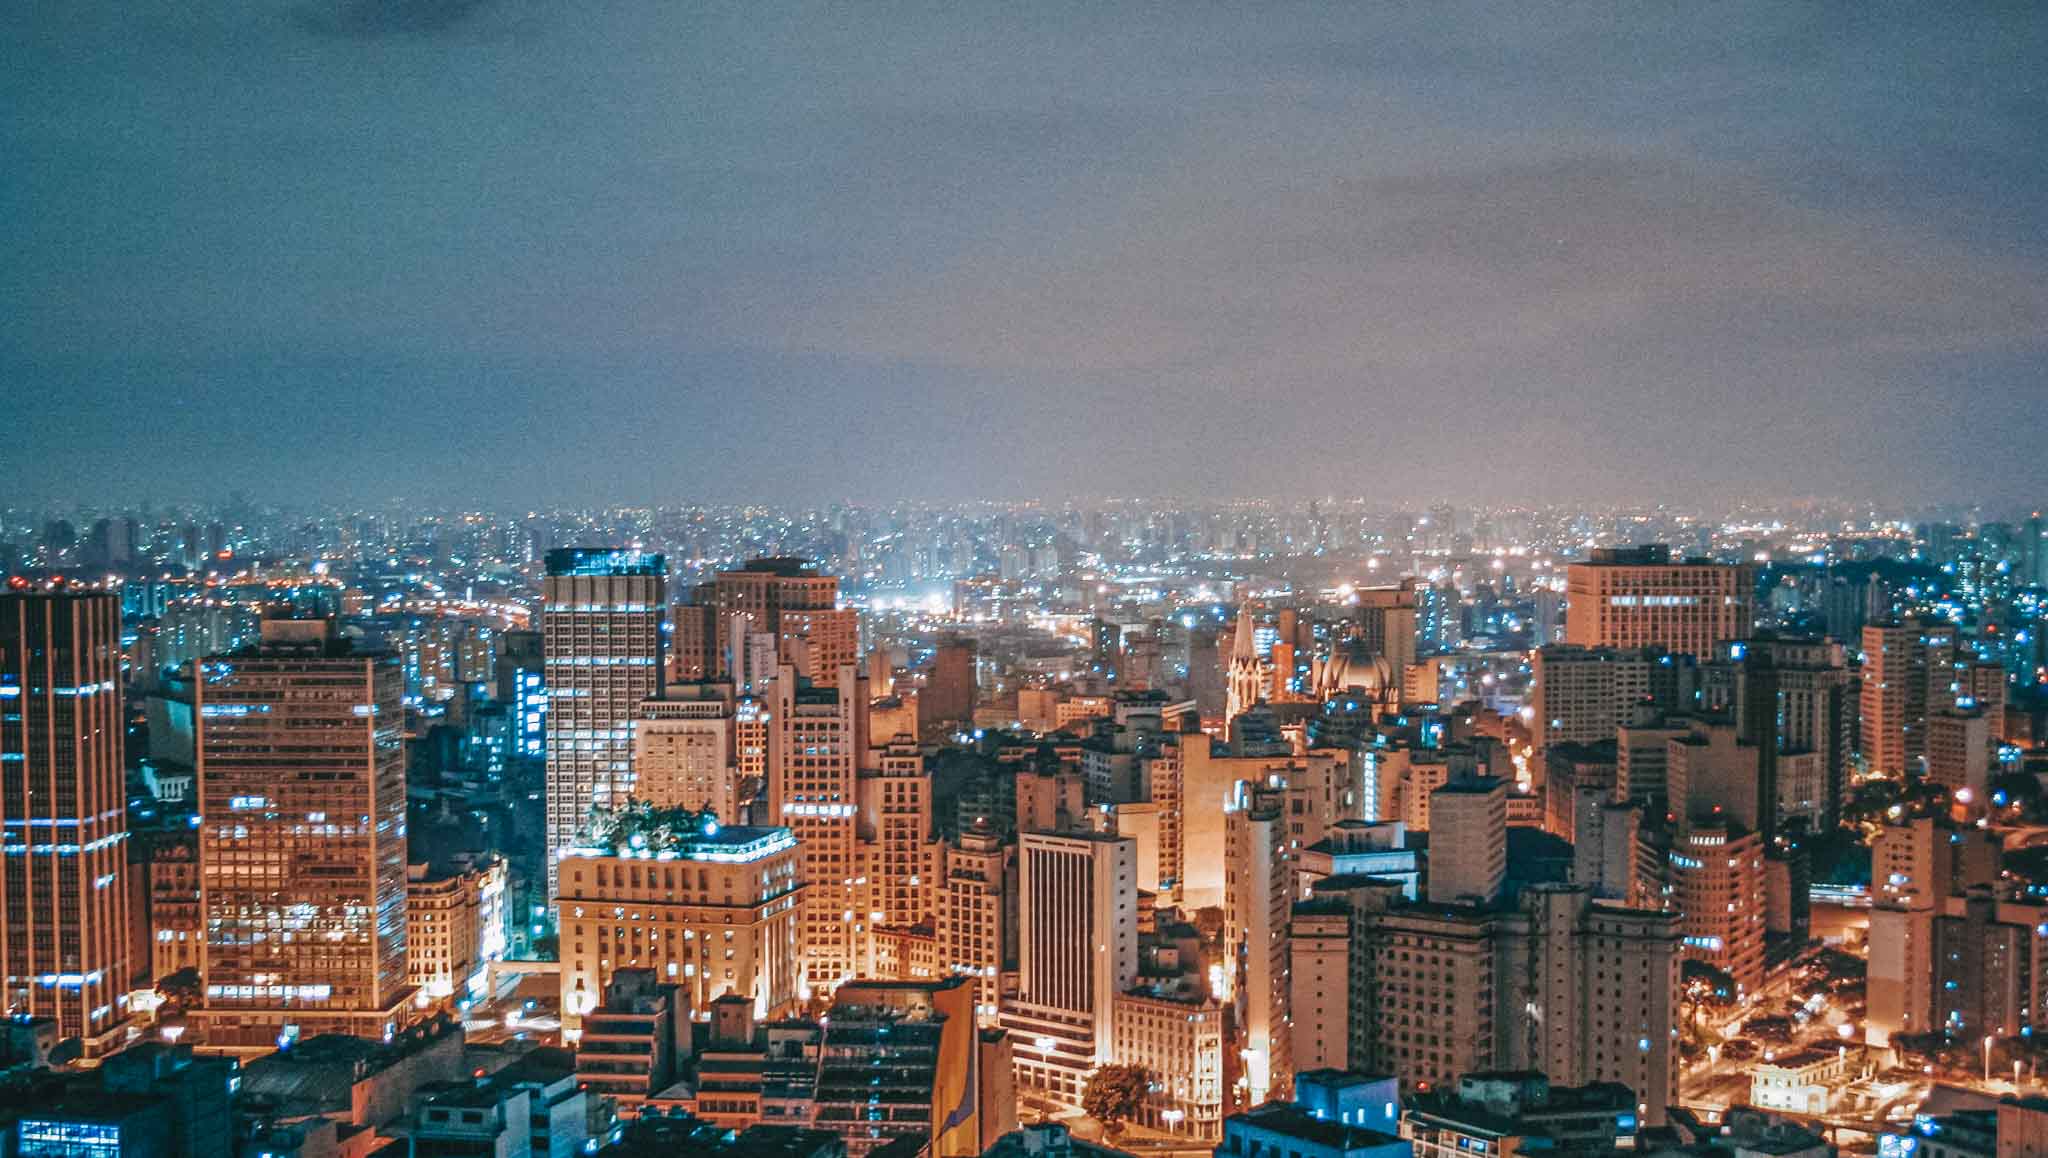 São Paulo vista noturna